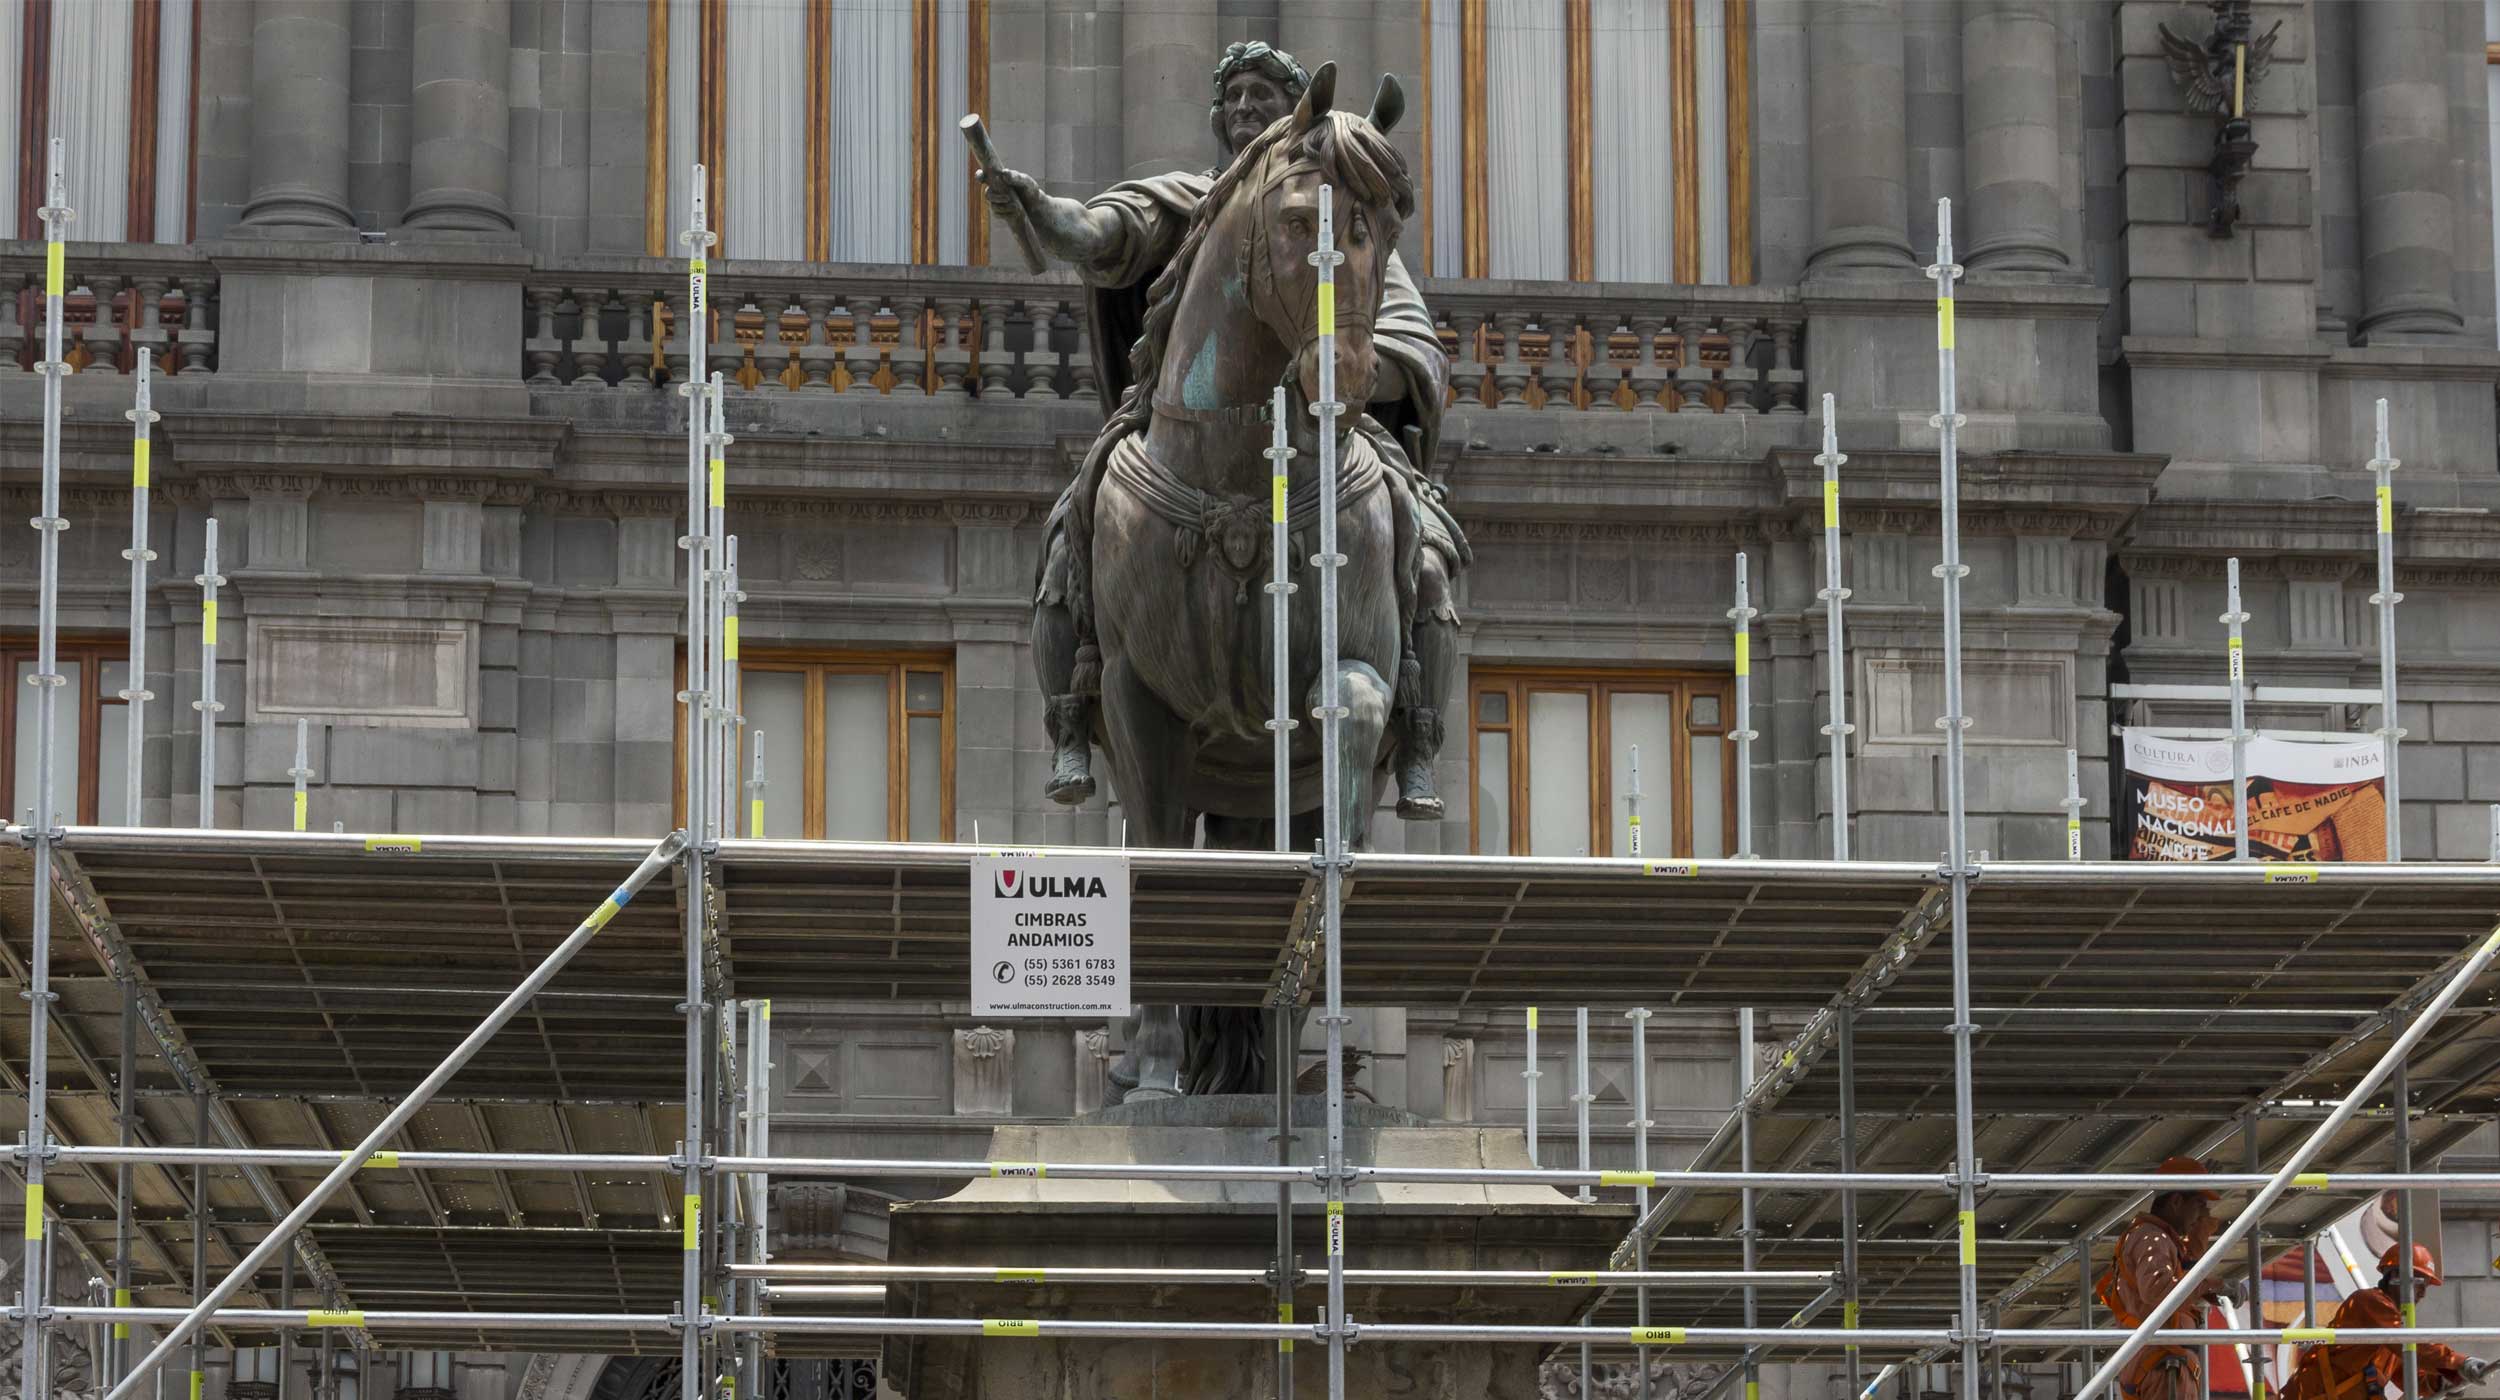 Servicio para la restauración y rehabilitación del monumento ecuestre a Carlos IV de España conocido como El Caballito.